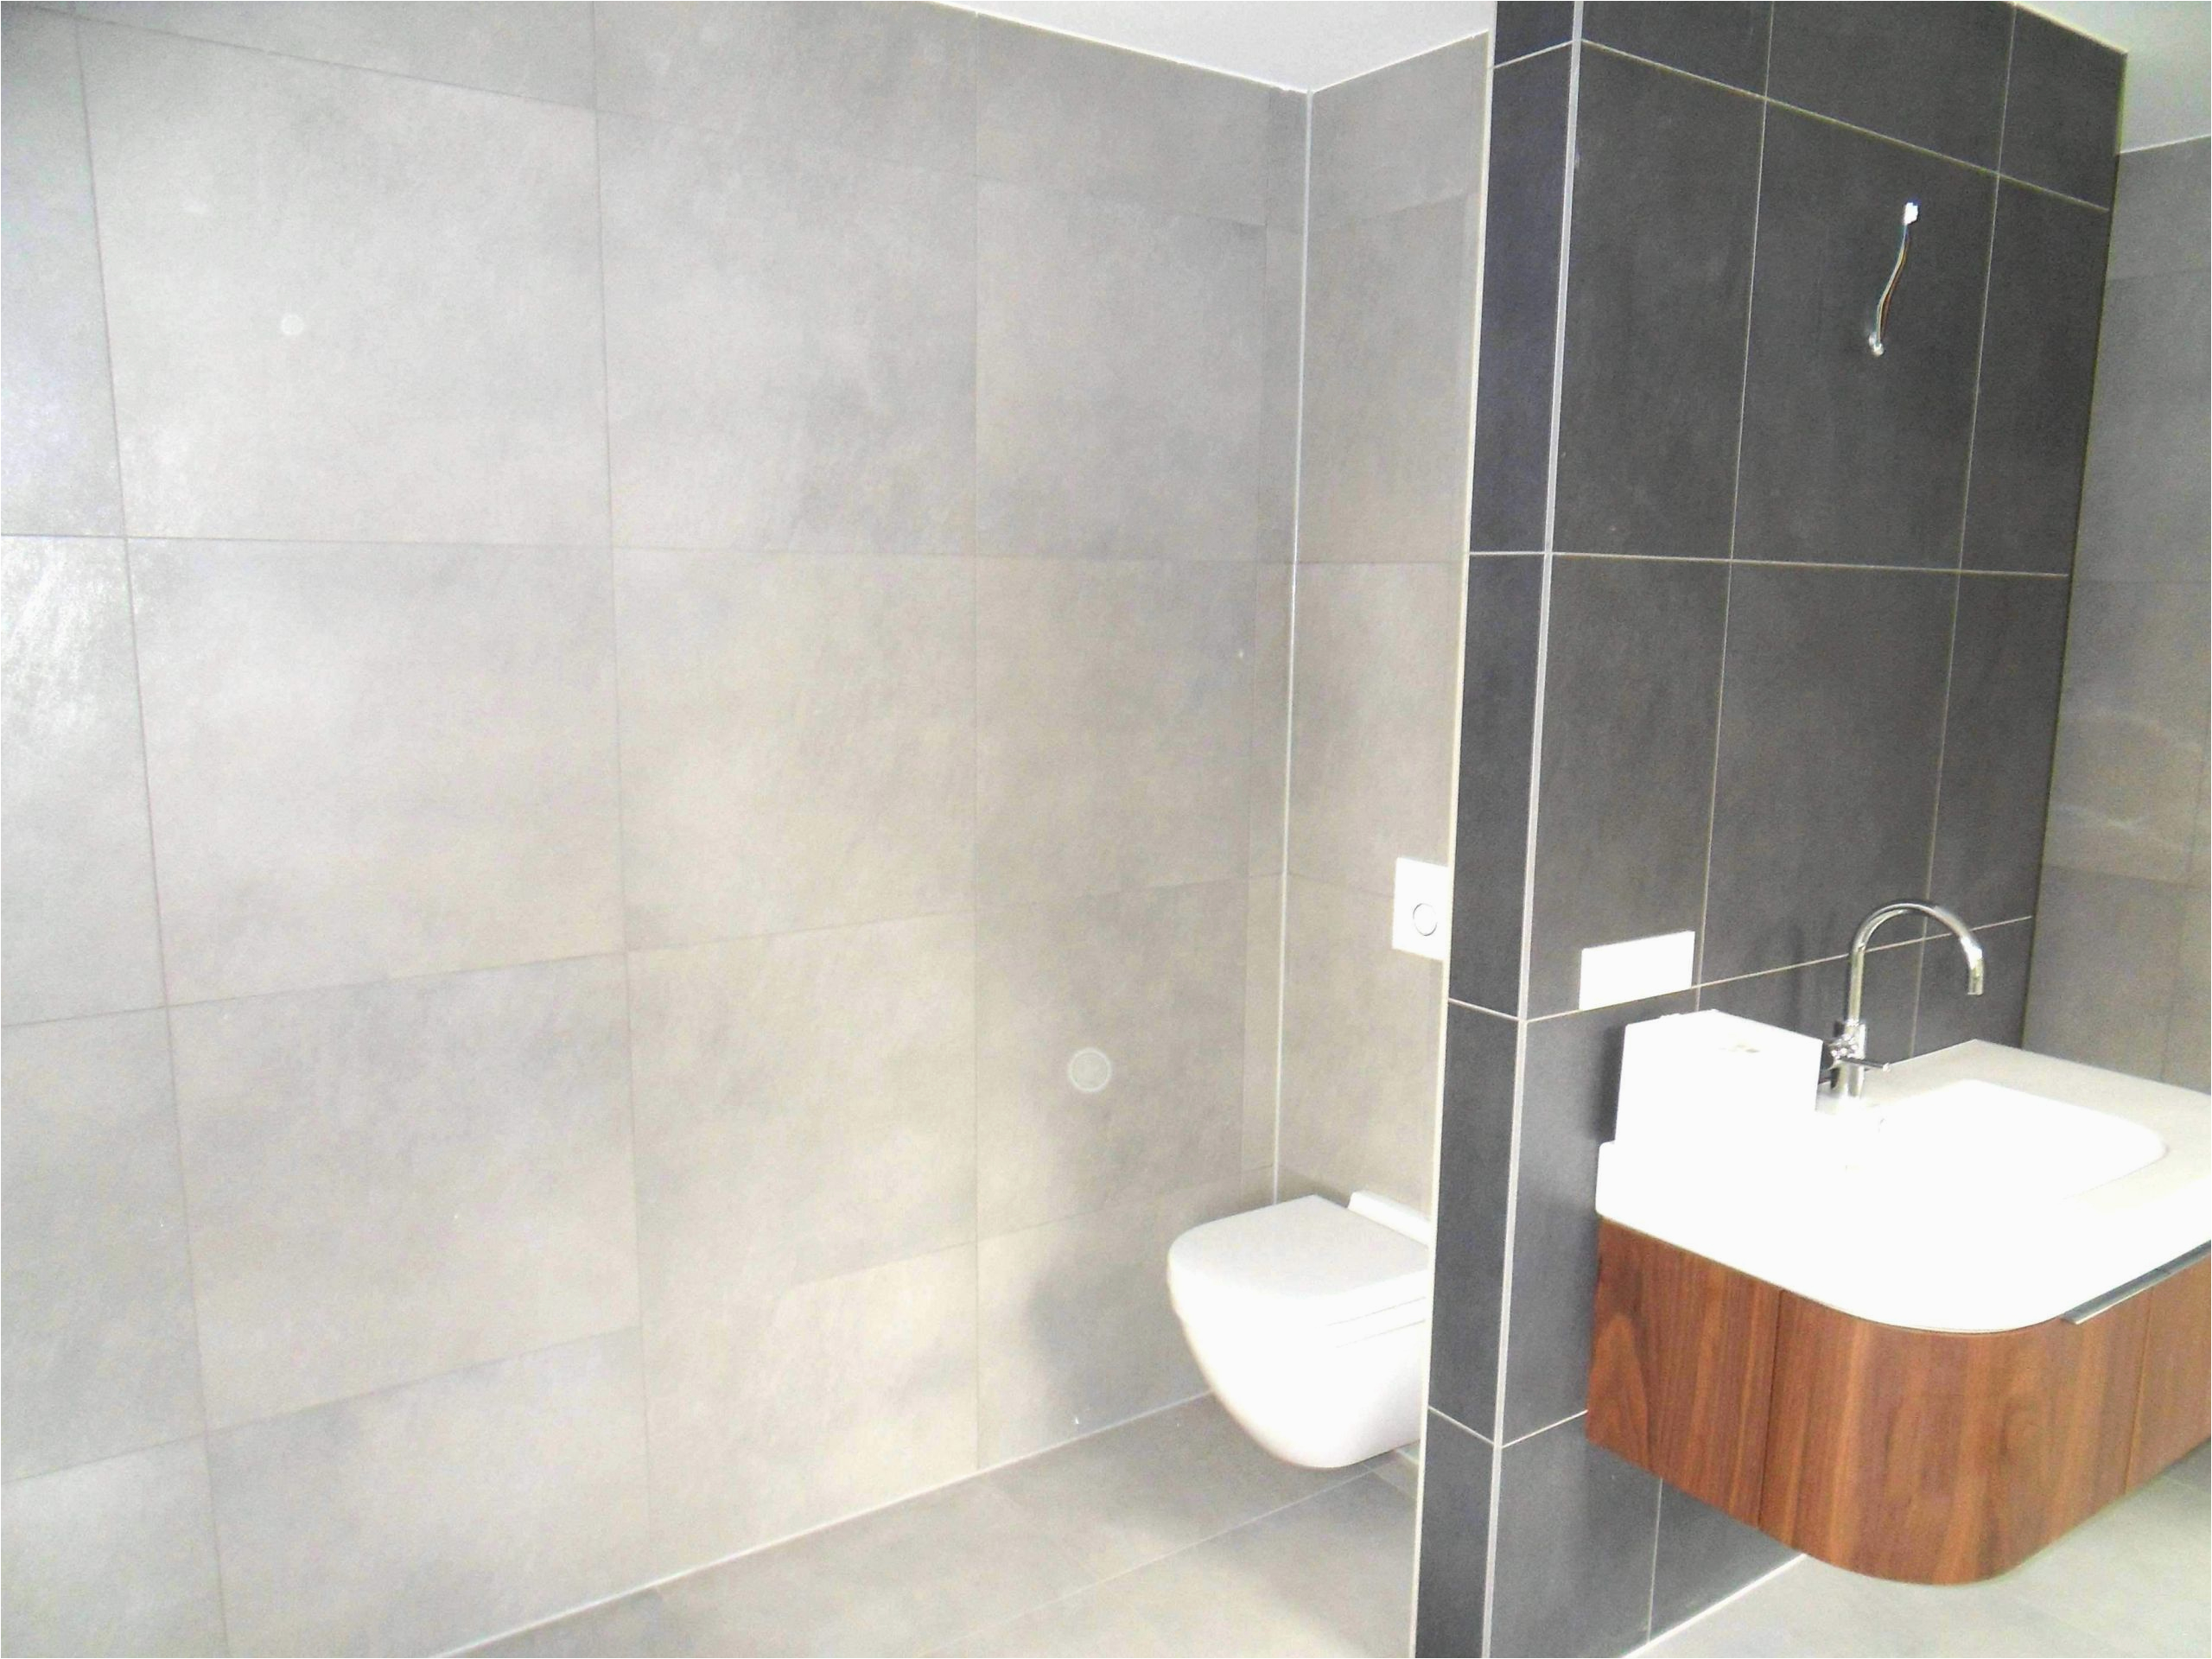 Alternativen Zu Fliesen Im Badezimmer Wohnzimmer Fliesen Genial Pvc Boden Badezimmer 0d